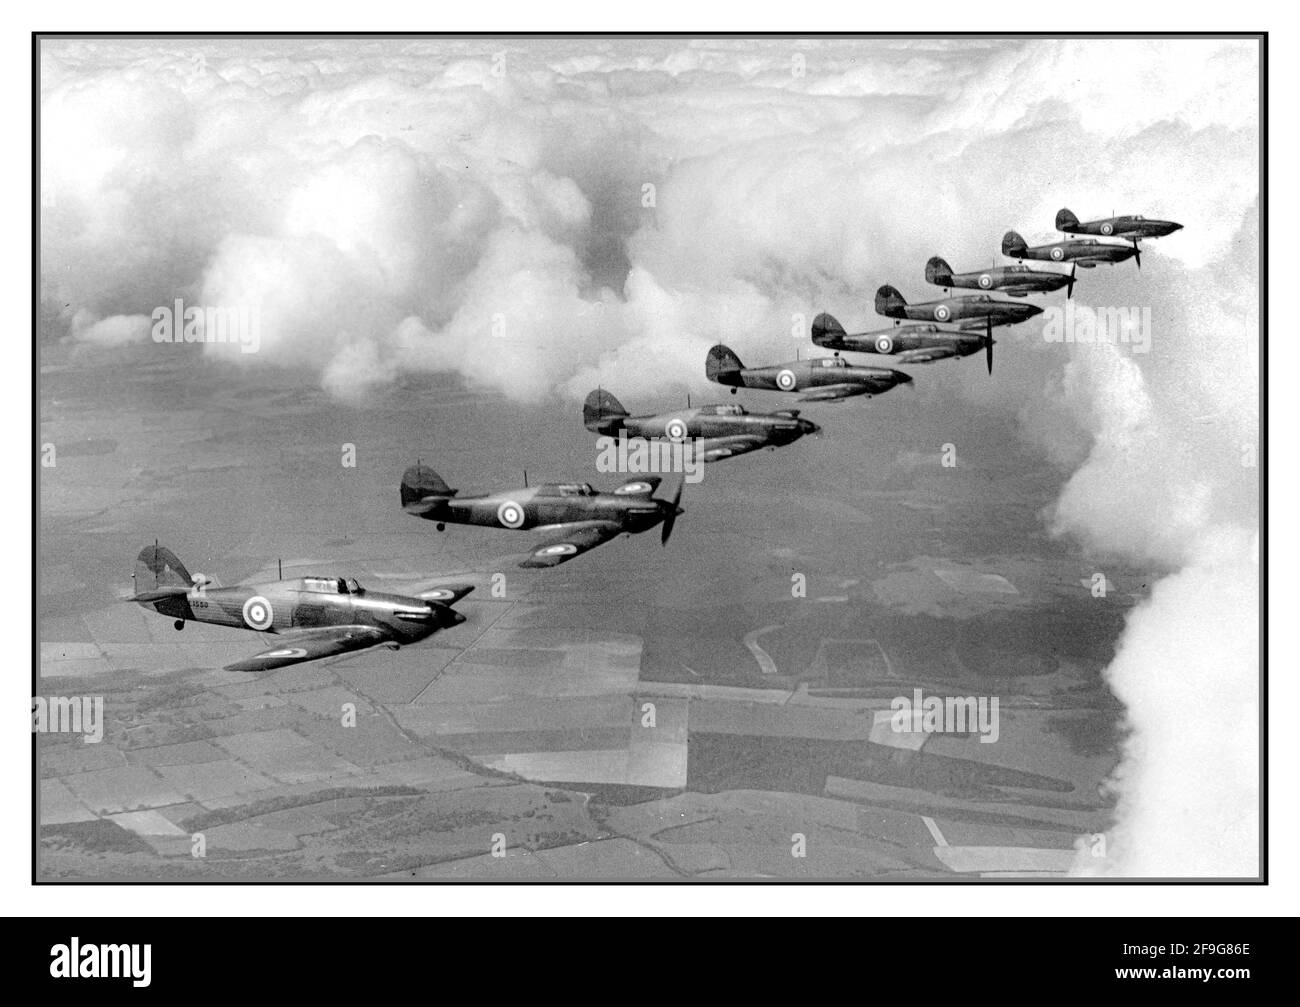 WW2 SCHLACHT VON GROSSBRITANNIEN Hawker-Jagdgeschwader auf Patrouille über Großbritannien, Die Hawker-Flotte ist ein britisches Einsitzer-Kampfflugzeug der Jahre 1930s–40s, das überwiegend von Hawker Aircraft Ltd. Für den Einsatz bei der Royal Air Force (RAF) entworfen und gebaut wurde. Der von der Nazi-Luftwaffe im Rahmen des Engagements erlittenen und in allen großen Theatern des Zweiten Weltkriegs kämpfte, verursachte den Großteil der Verluste in der Schlacht von Großbritannien. Stockfoto